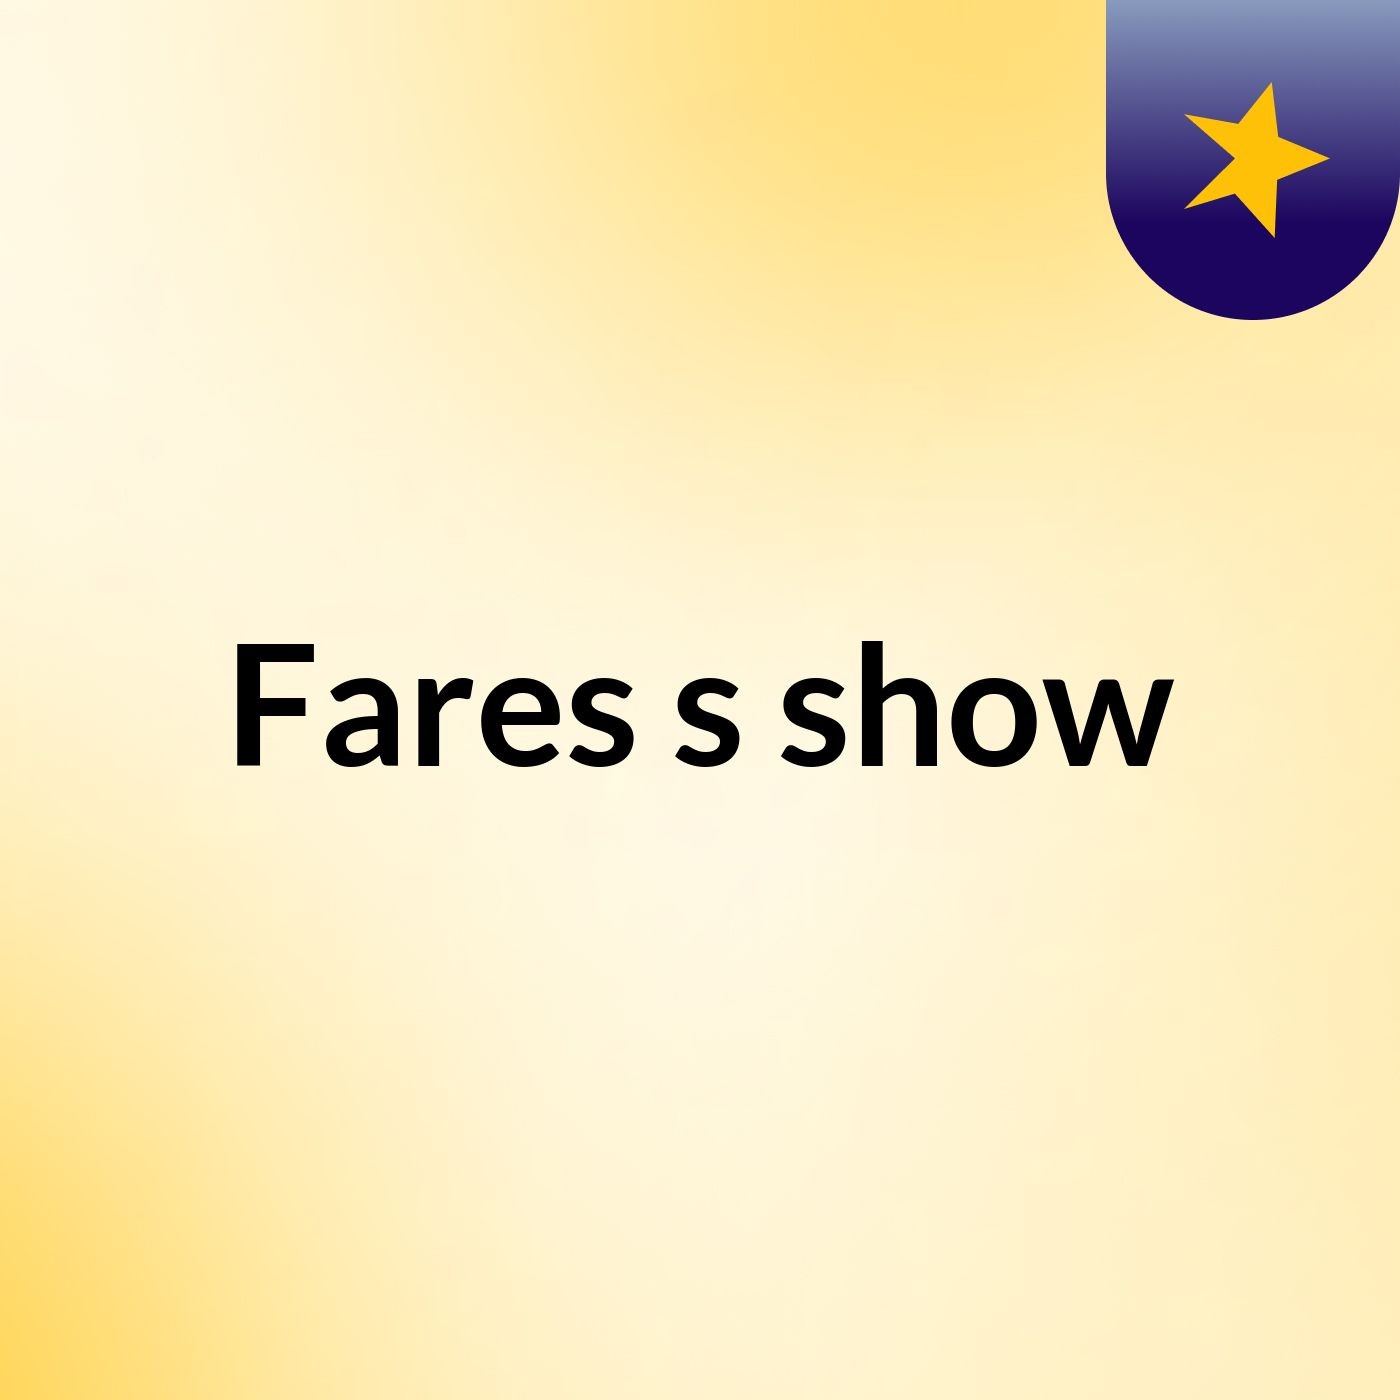 Fares's show